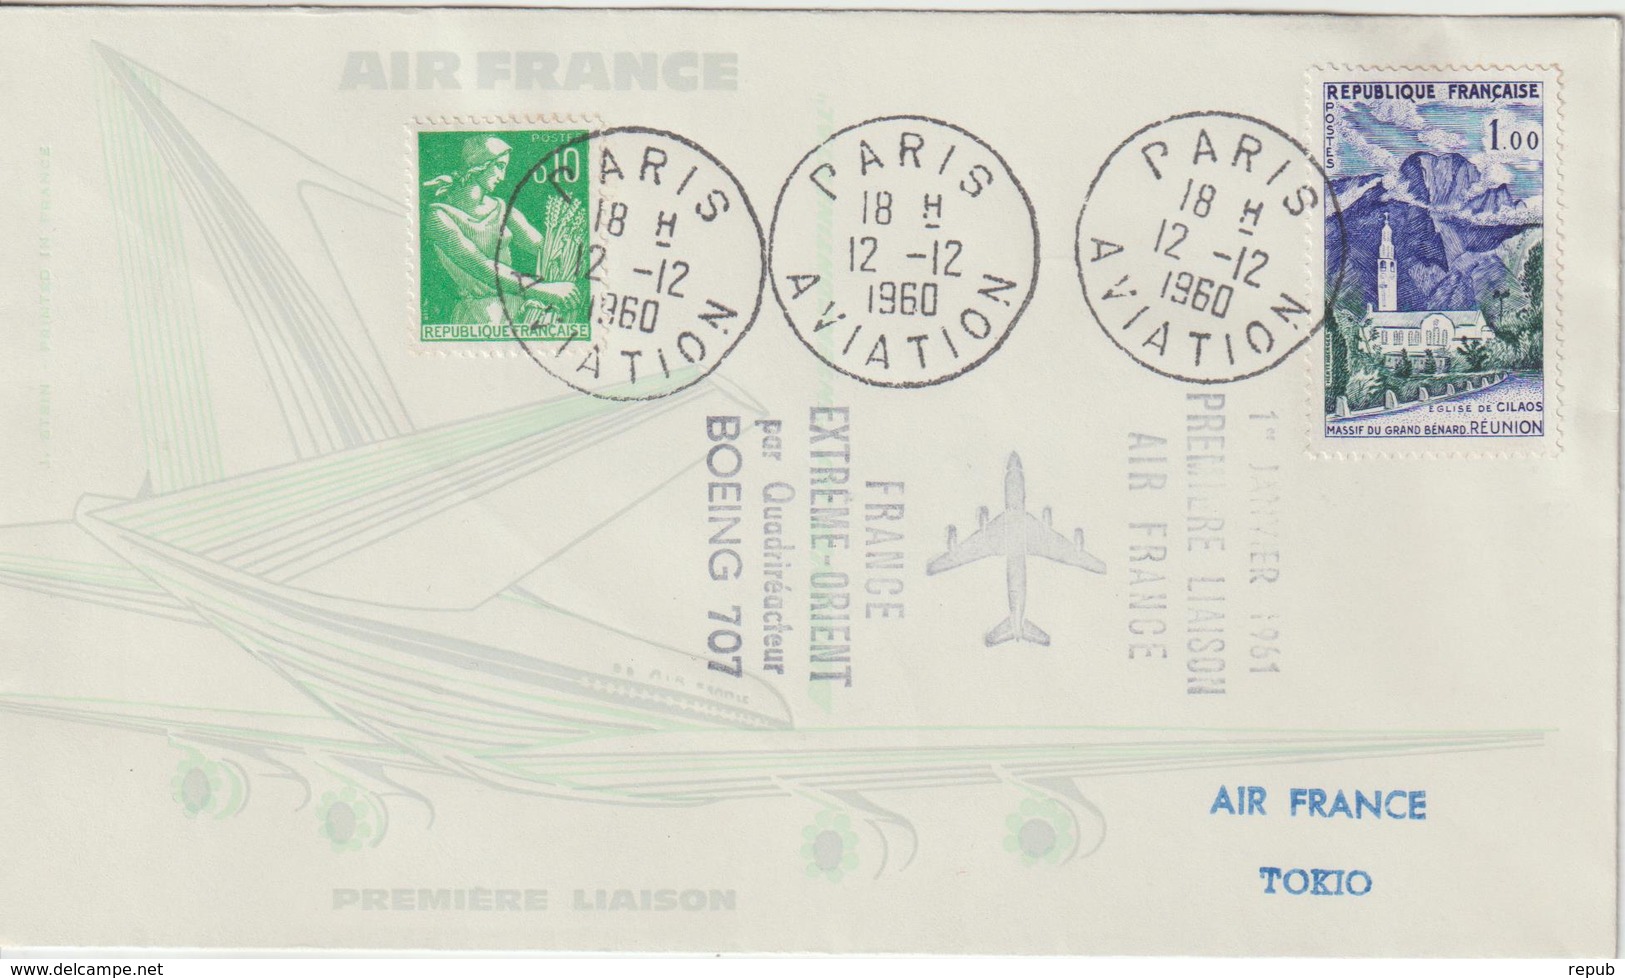 France 1960 Première Liaison Air France Paris Tokyo - First Flight Covers